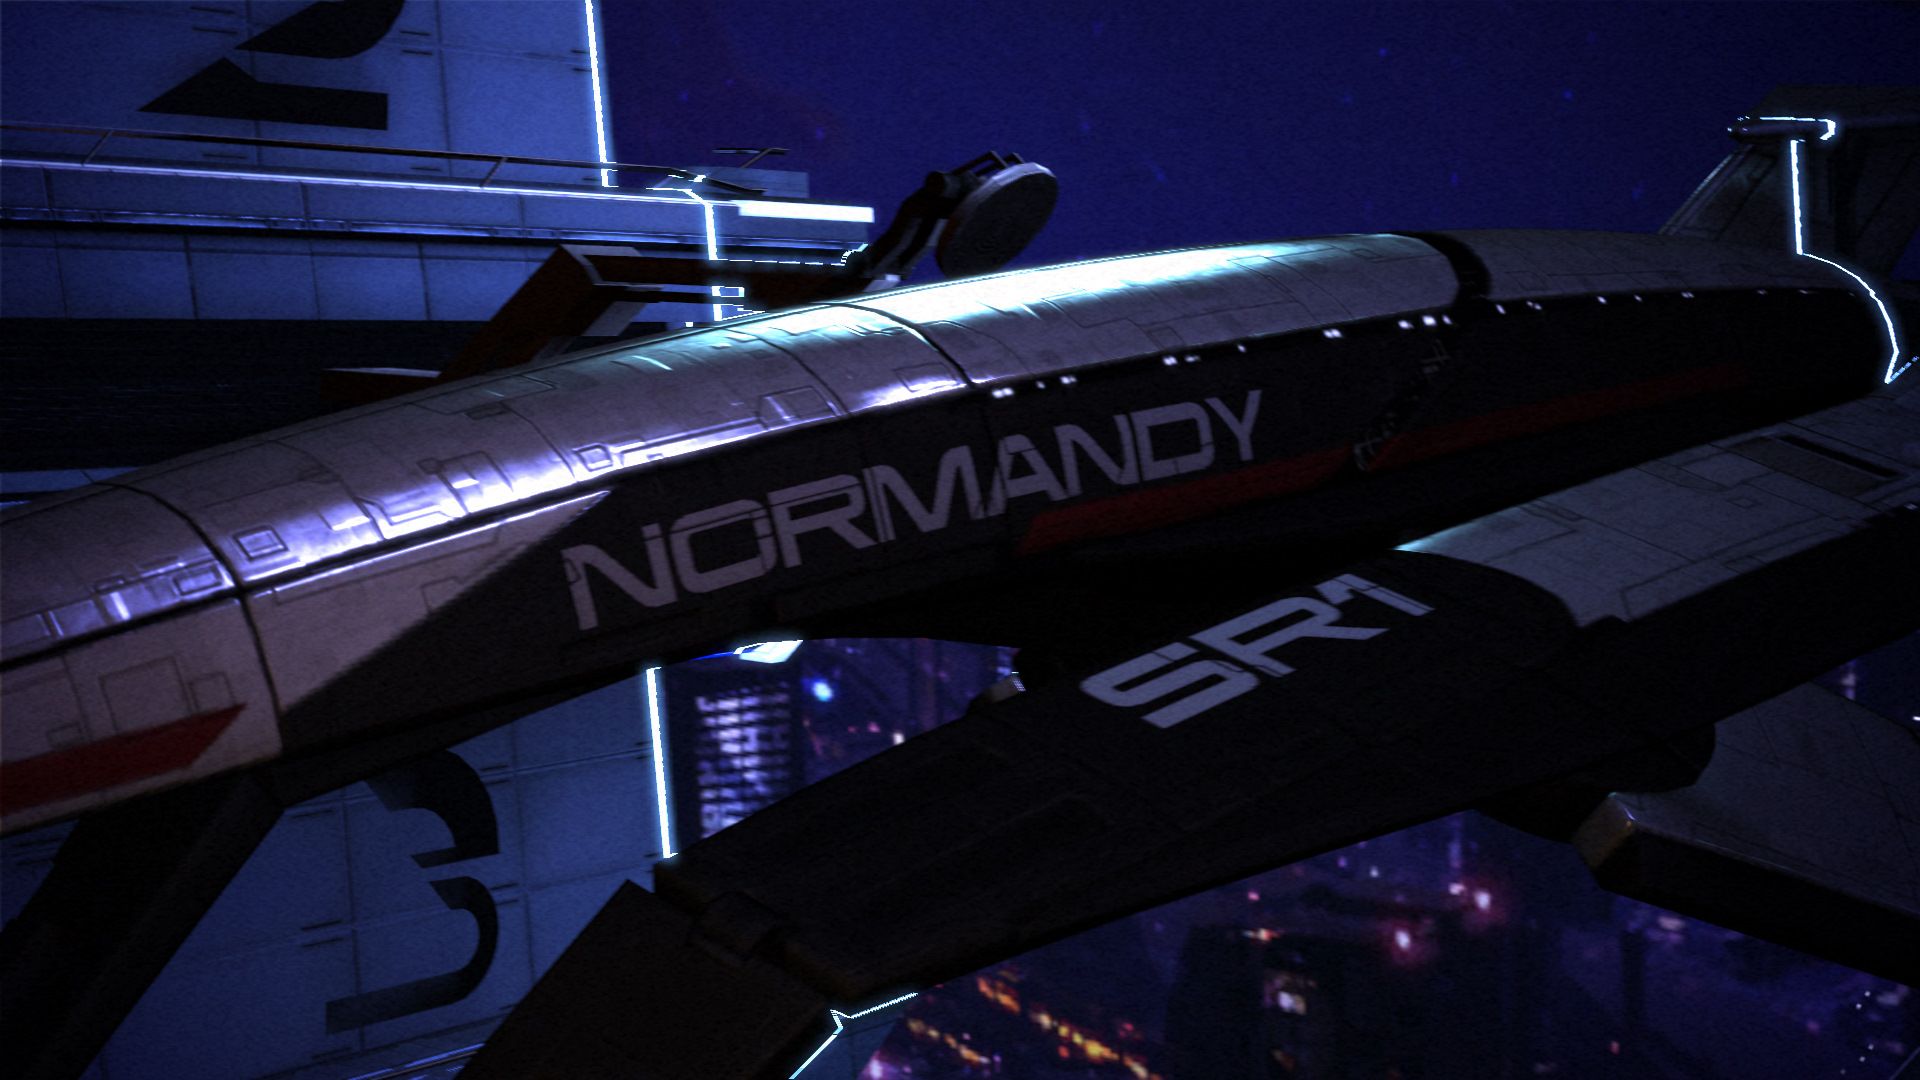 Mass Effect Normandy Wallpaper Joshhome